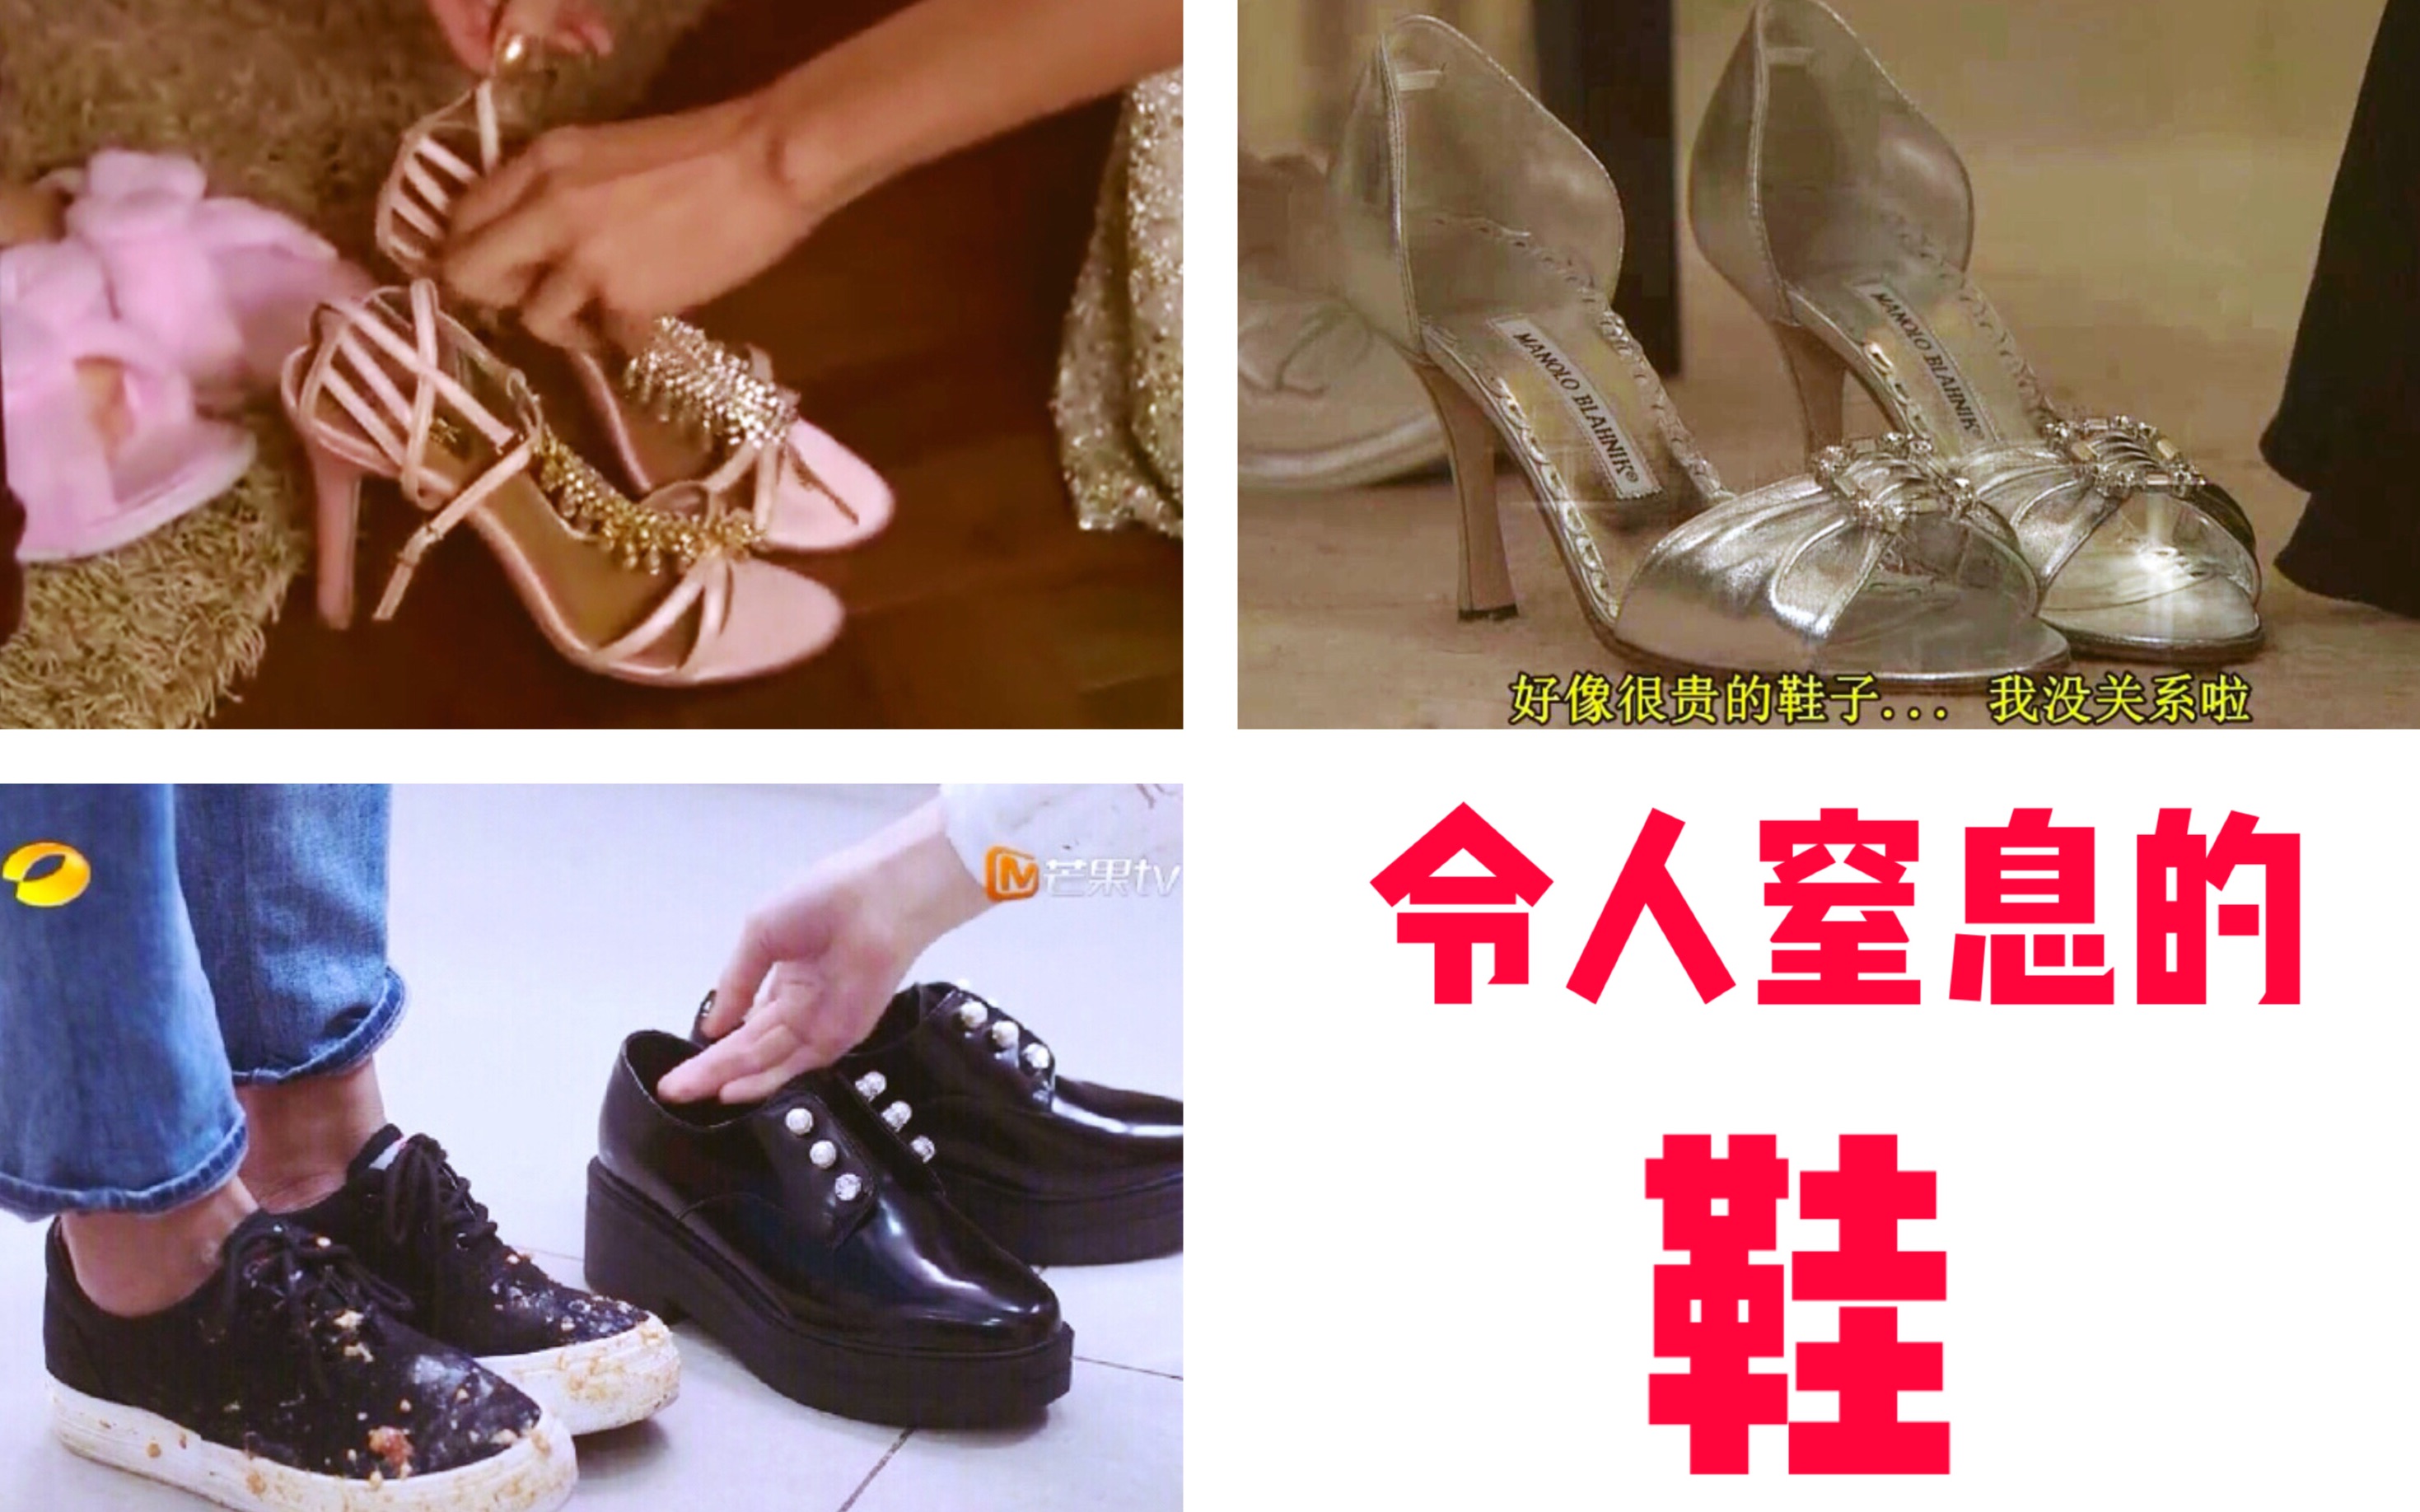 【对比】中日韩三版流星花园——藤堂静送杉菜鞋